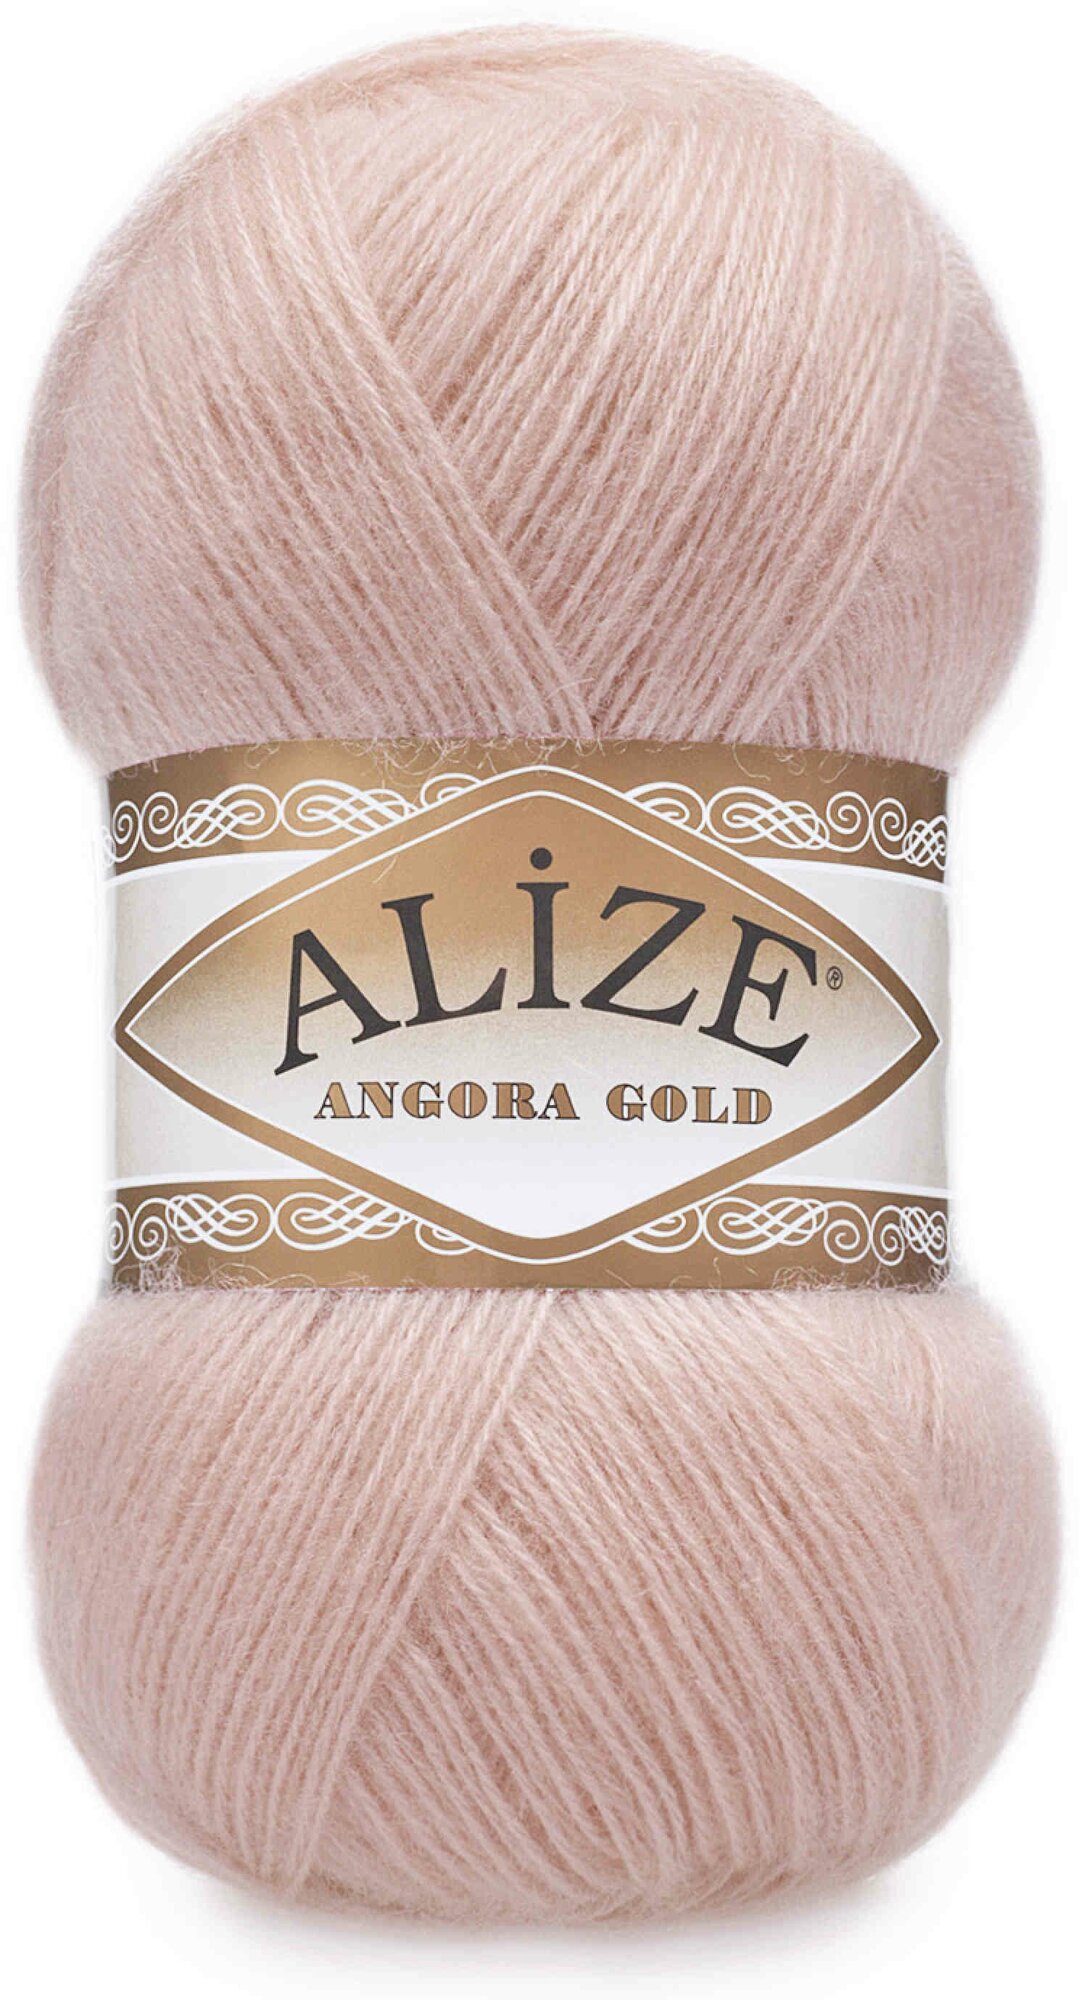 Пряжа Alize Angora Gold пудра (161), 80%акрил/20%шерсть, 550м, 100г, 1шт